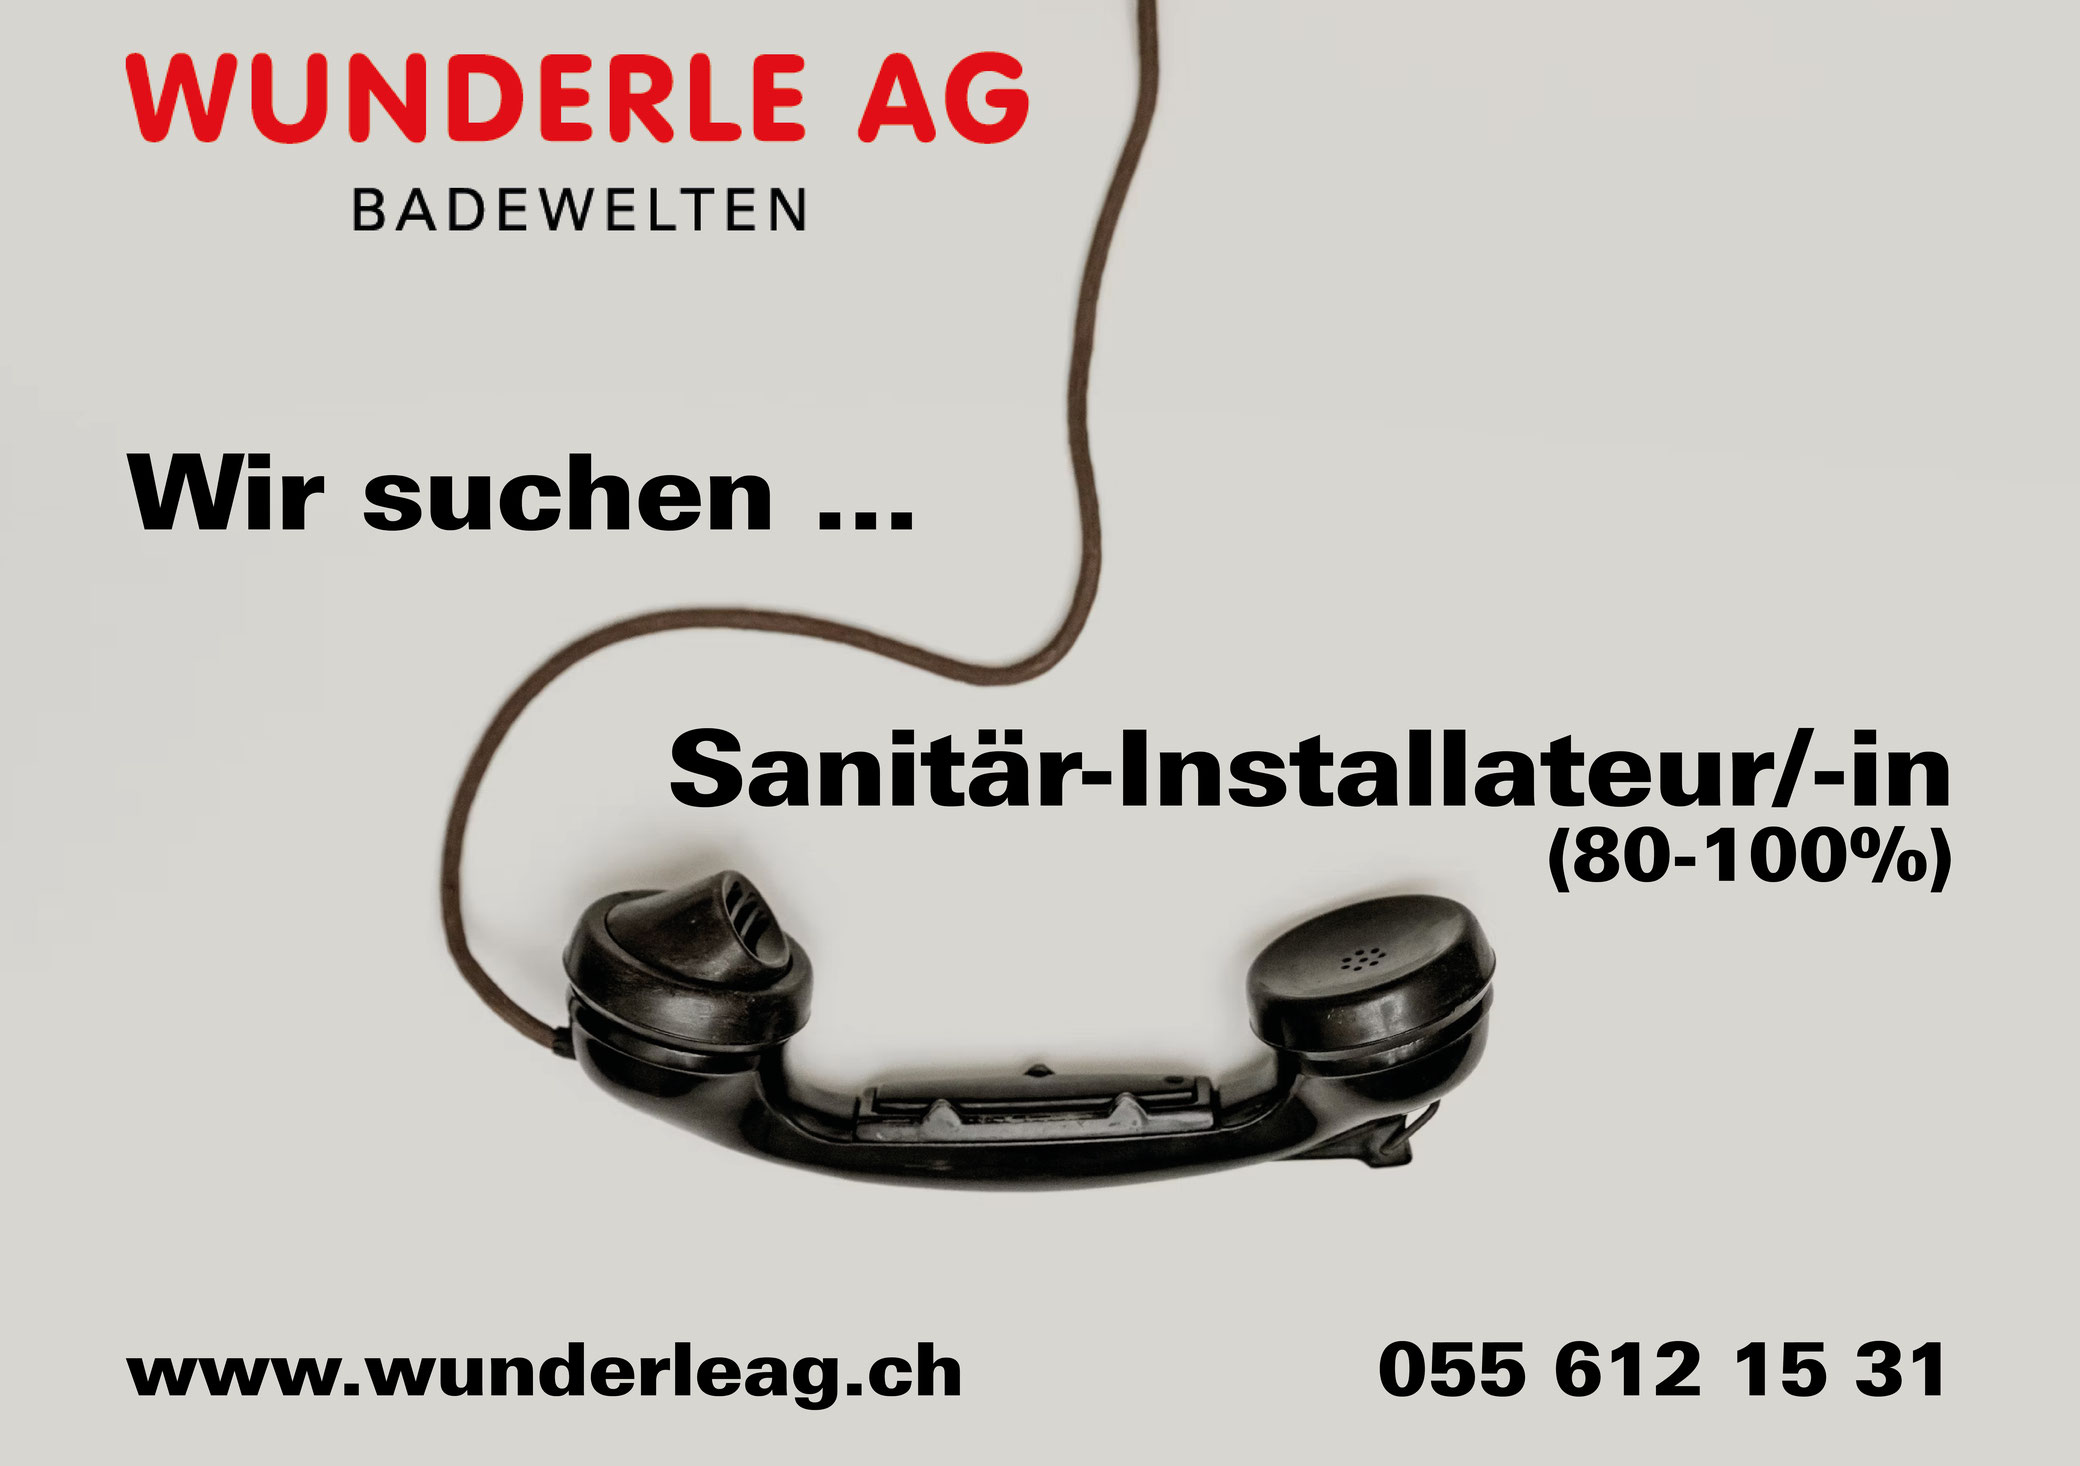 (c) Wunderleag.ch